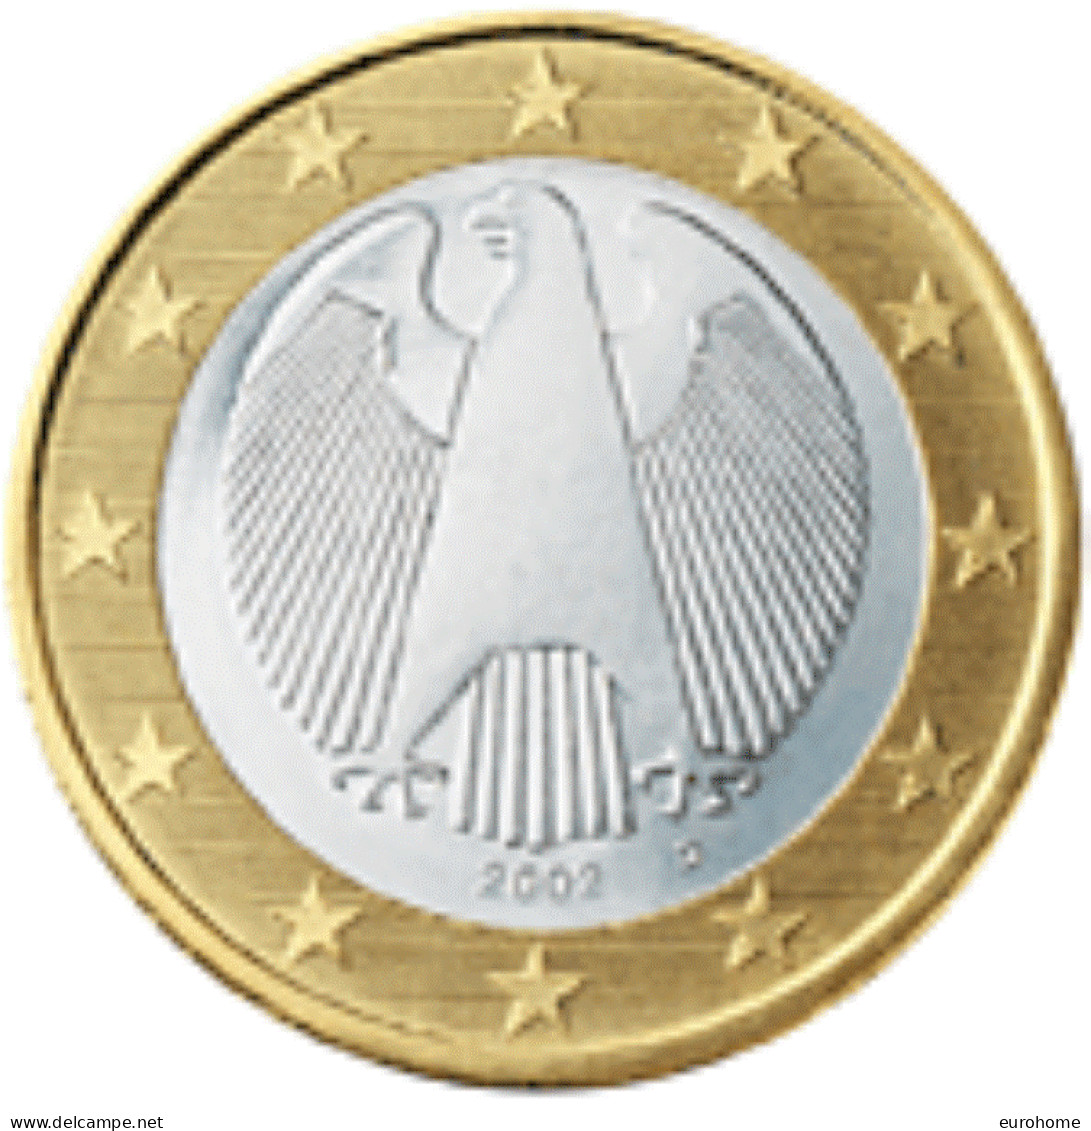 Duitsland 2022   1 Euro   Letter D - Atelier D  UNC Uit De BU - Unc Du Coffret !!! - Allemagne